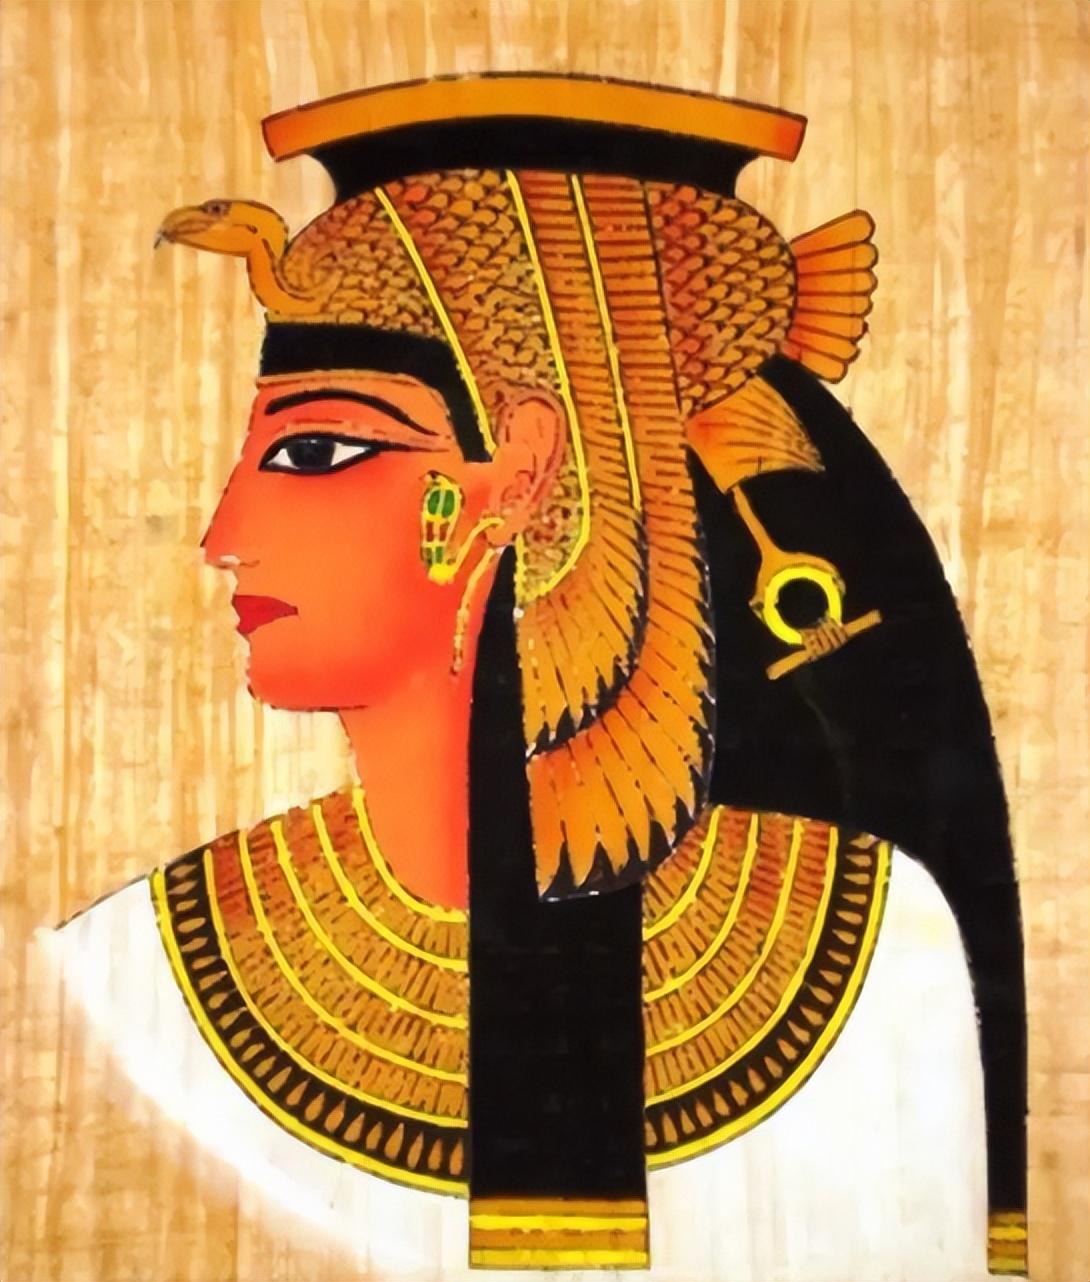 埃及最后一位法老克利奥帕特拉七世女王,统治期间战略沟通(下)